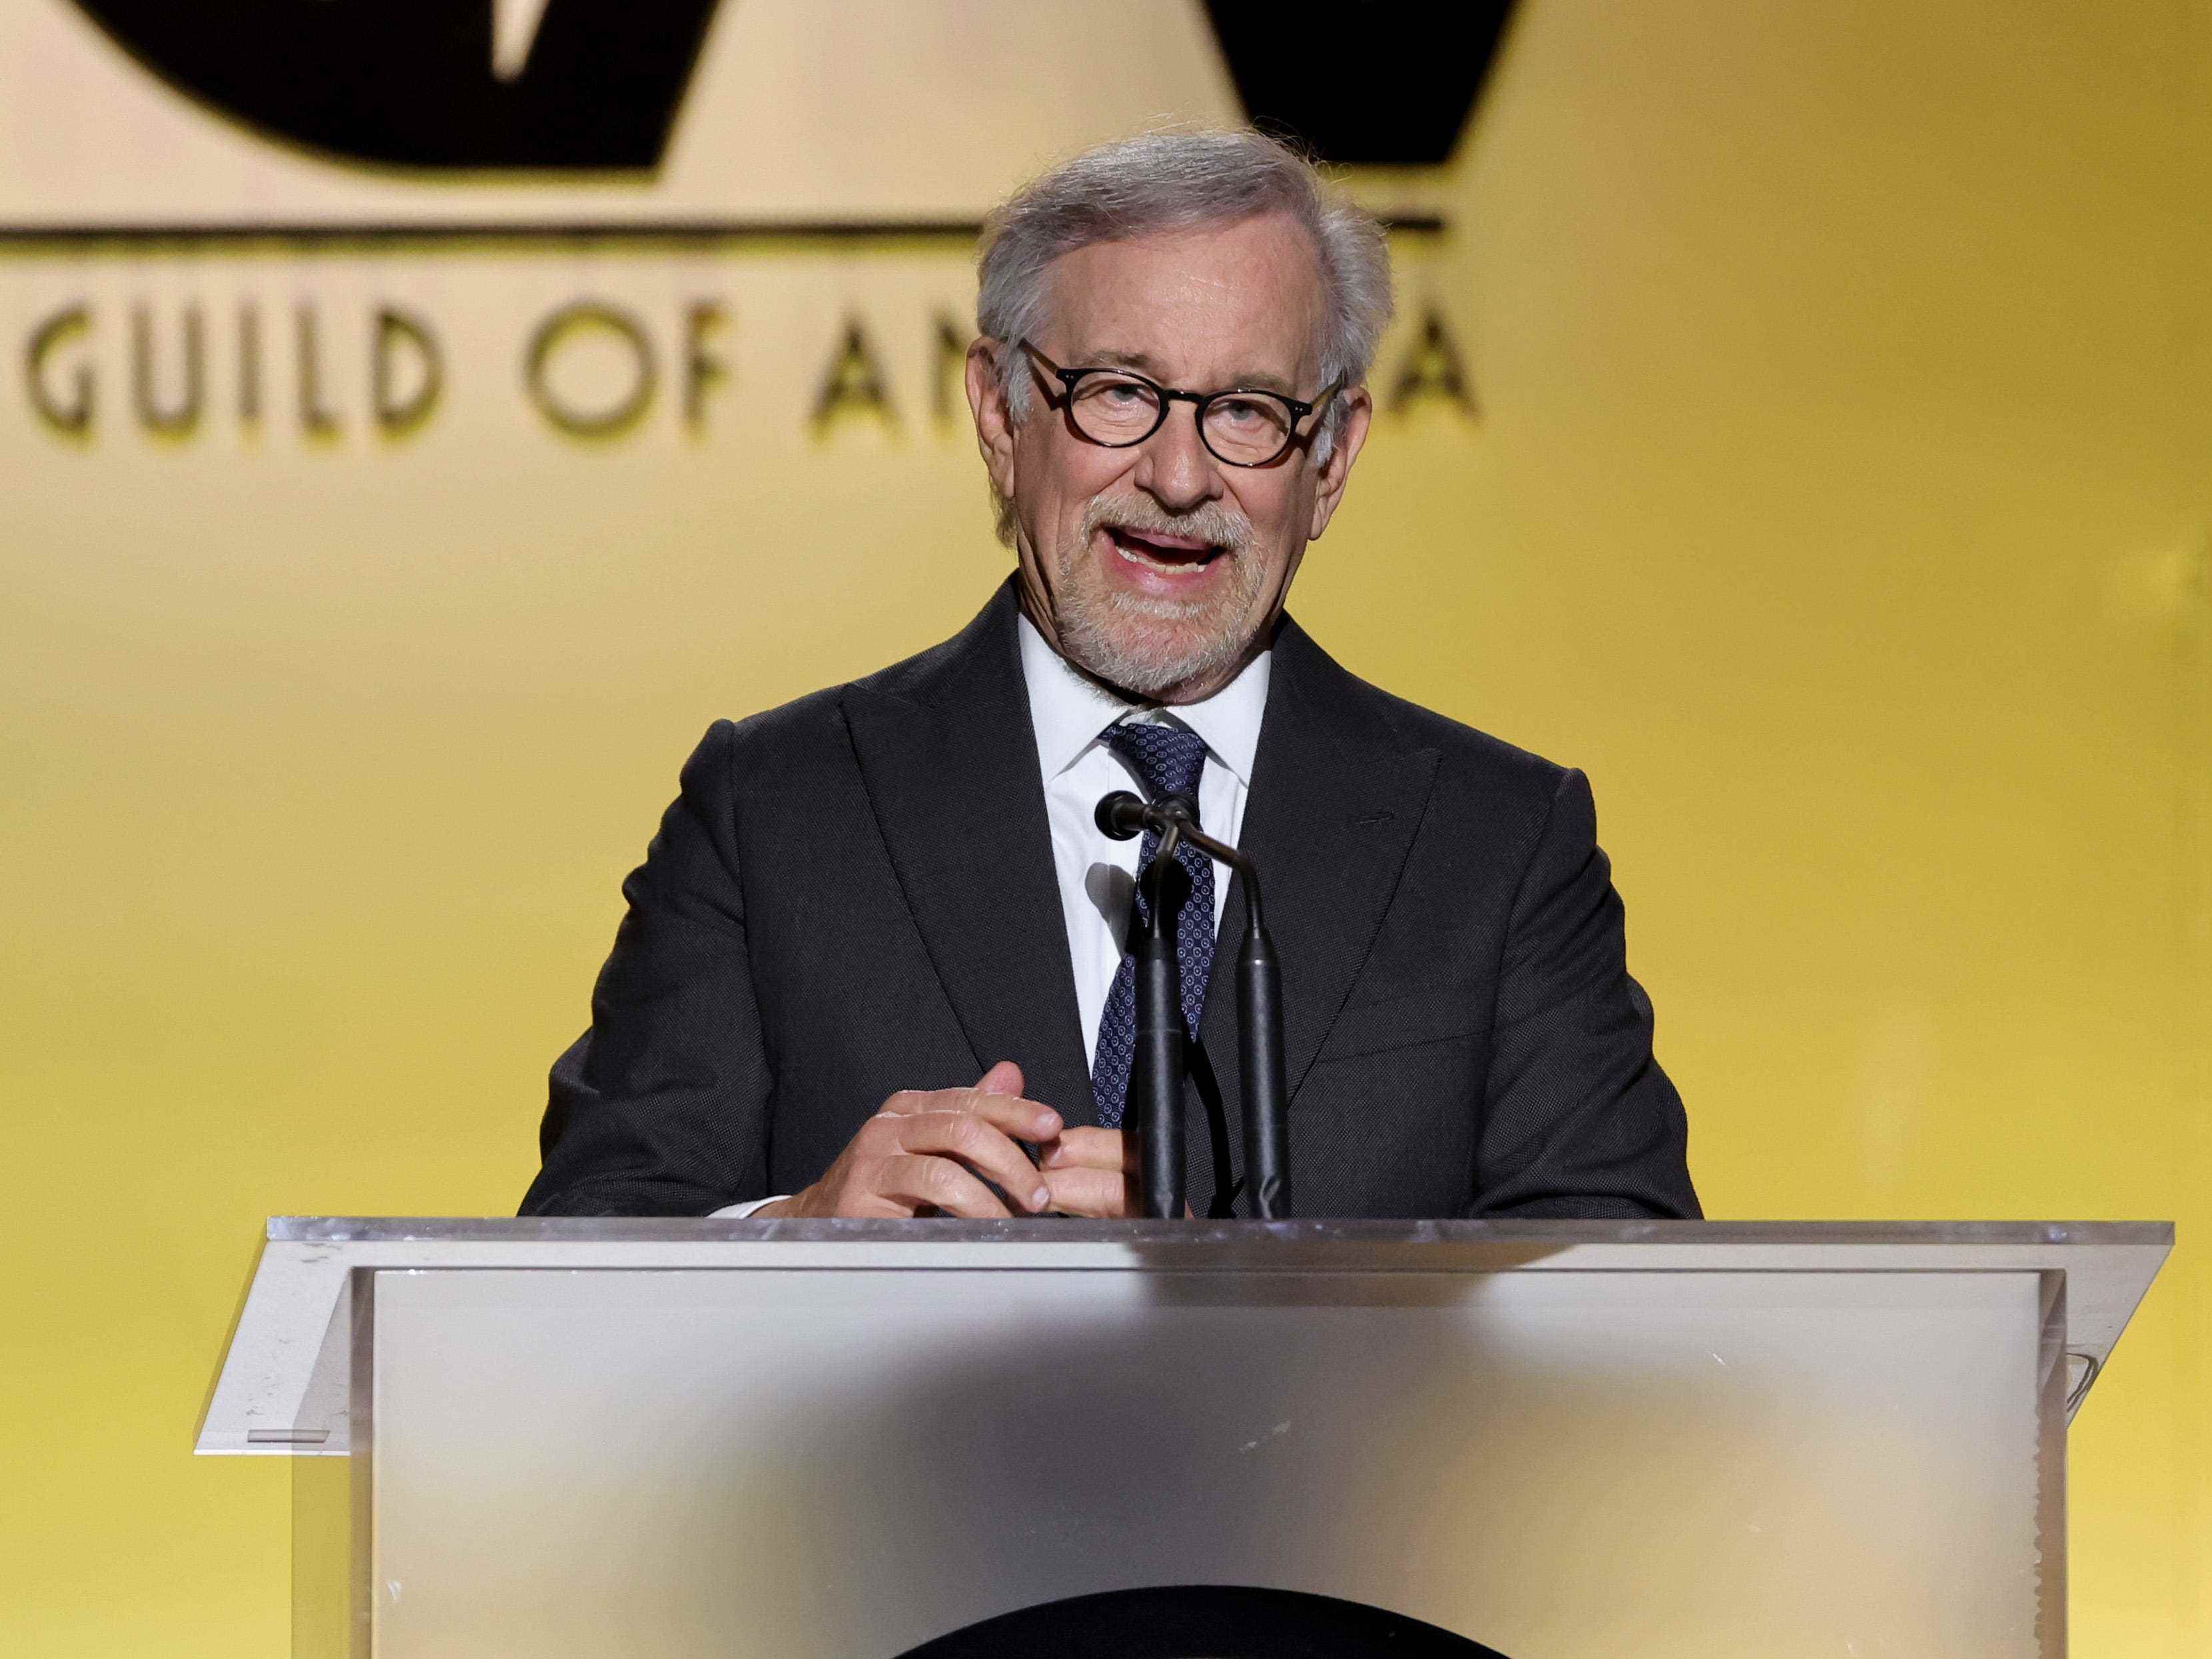 Steven Spielberg spricht auf der Bühne während der 33. jährlichen Producers Guild Awards im Fairmont Century Plaza am 19. März 2022 in Los Angeles, Kalifornien.